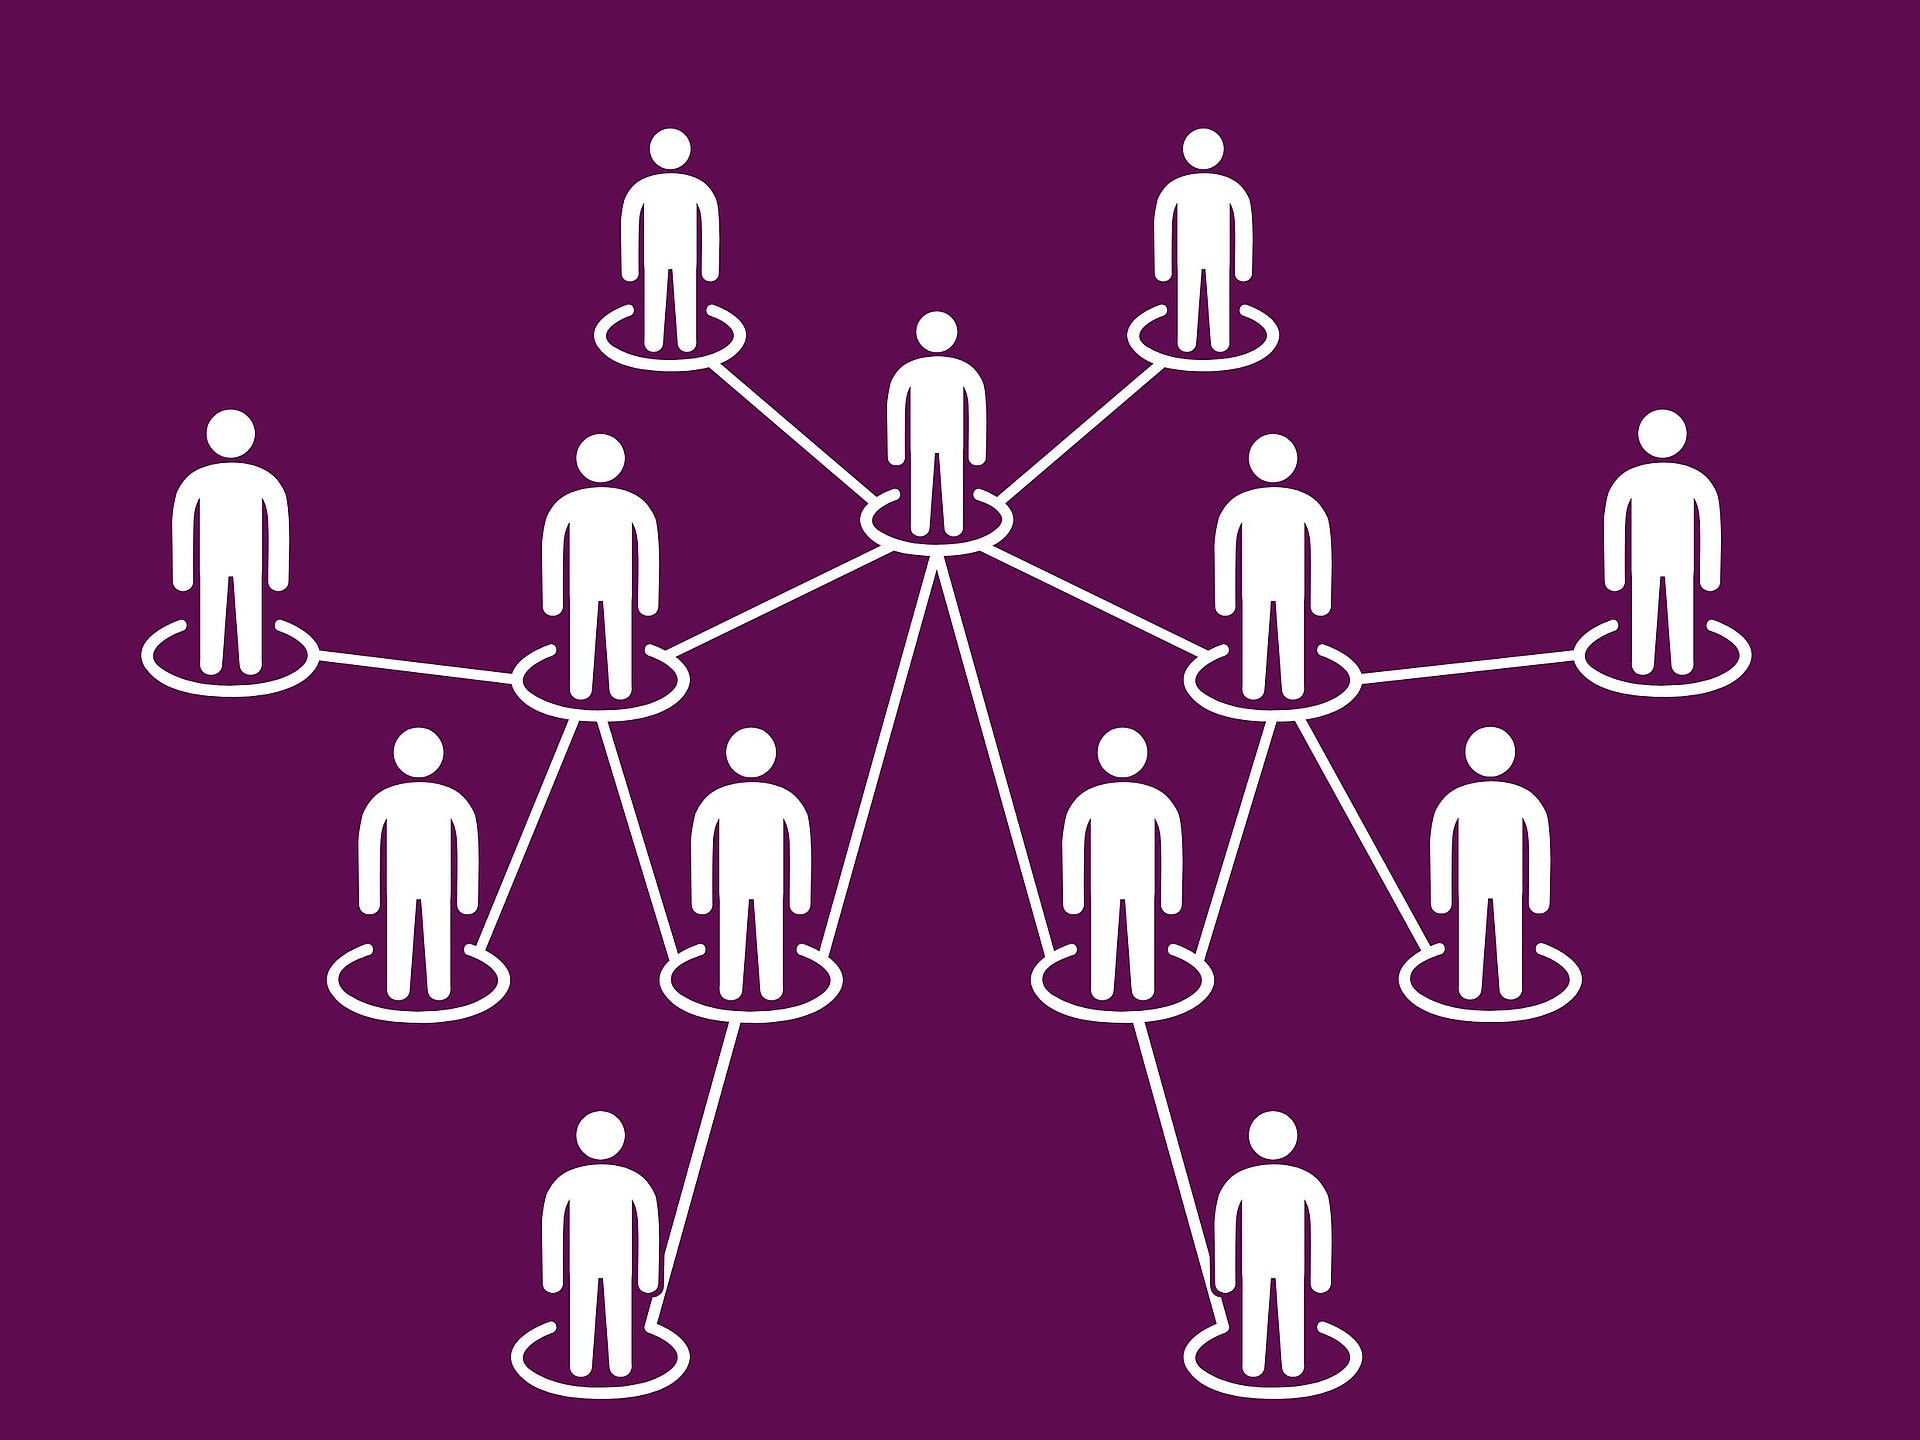 Schaubild mit mehreren Personen, die in Kreisen stehen und durch Strichen miteinander verbunden sind